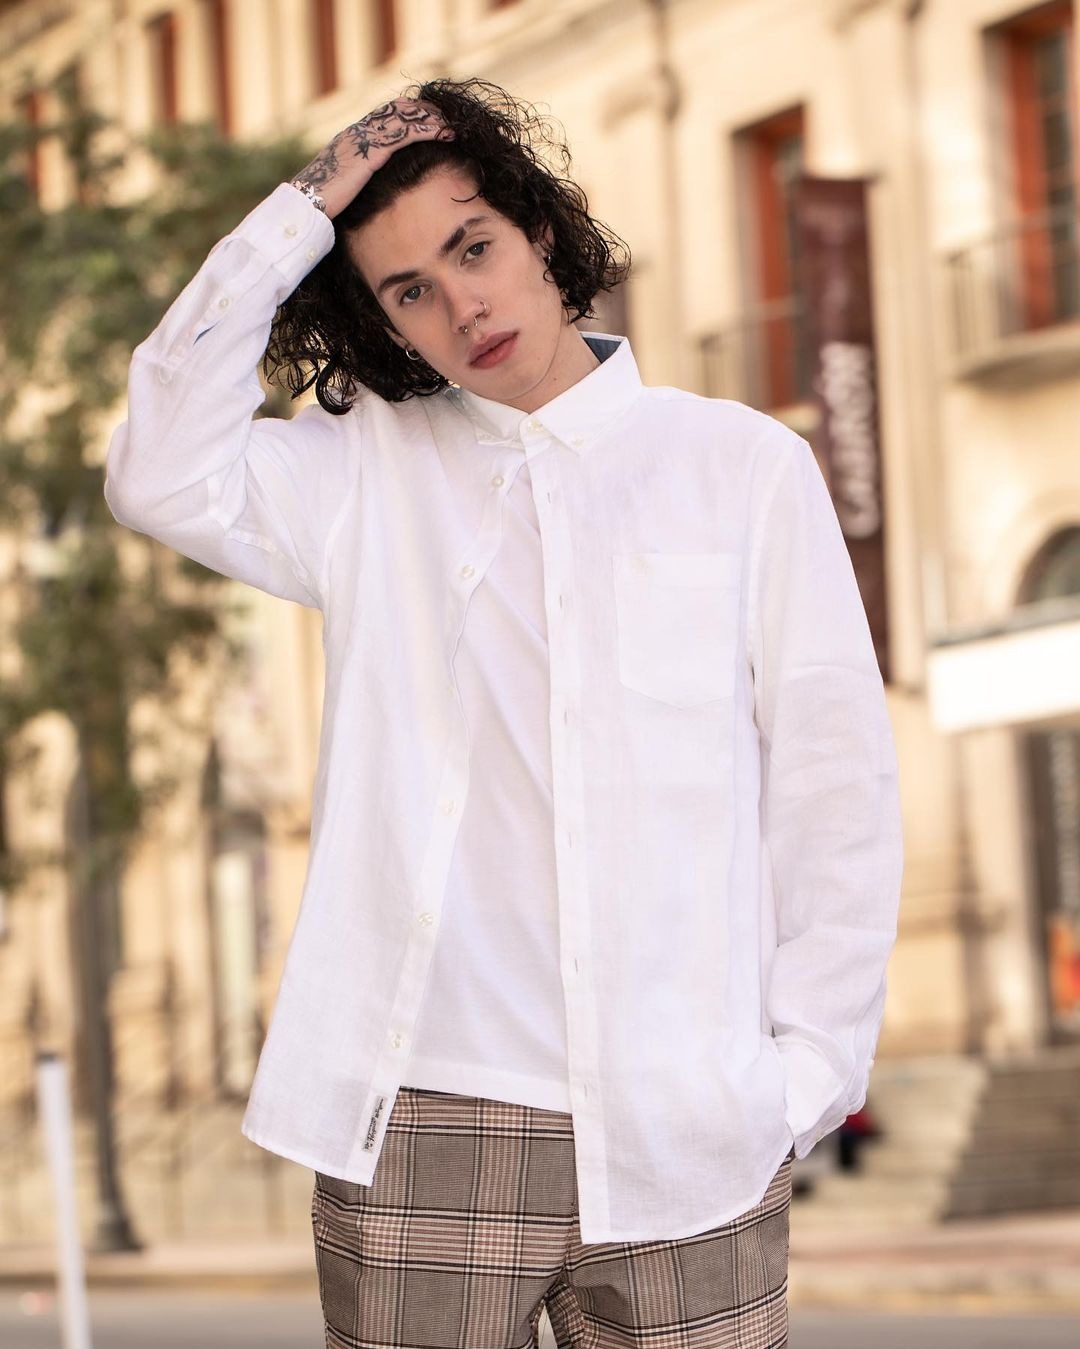 Hijo menor de Marc Anthony y Dayanara Torres triunfa como modelo a sus 19 años 